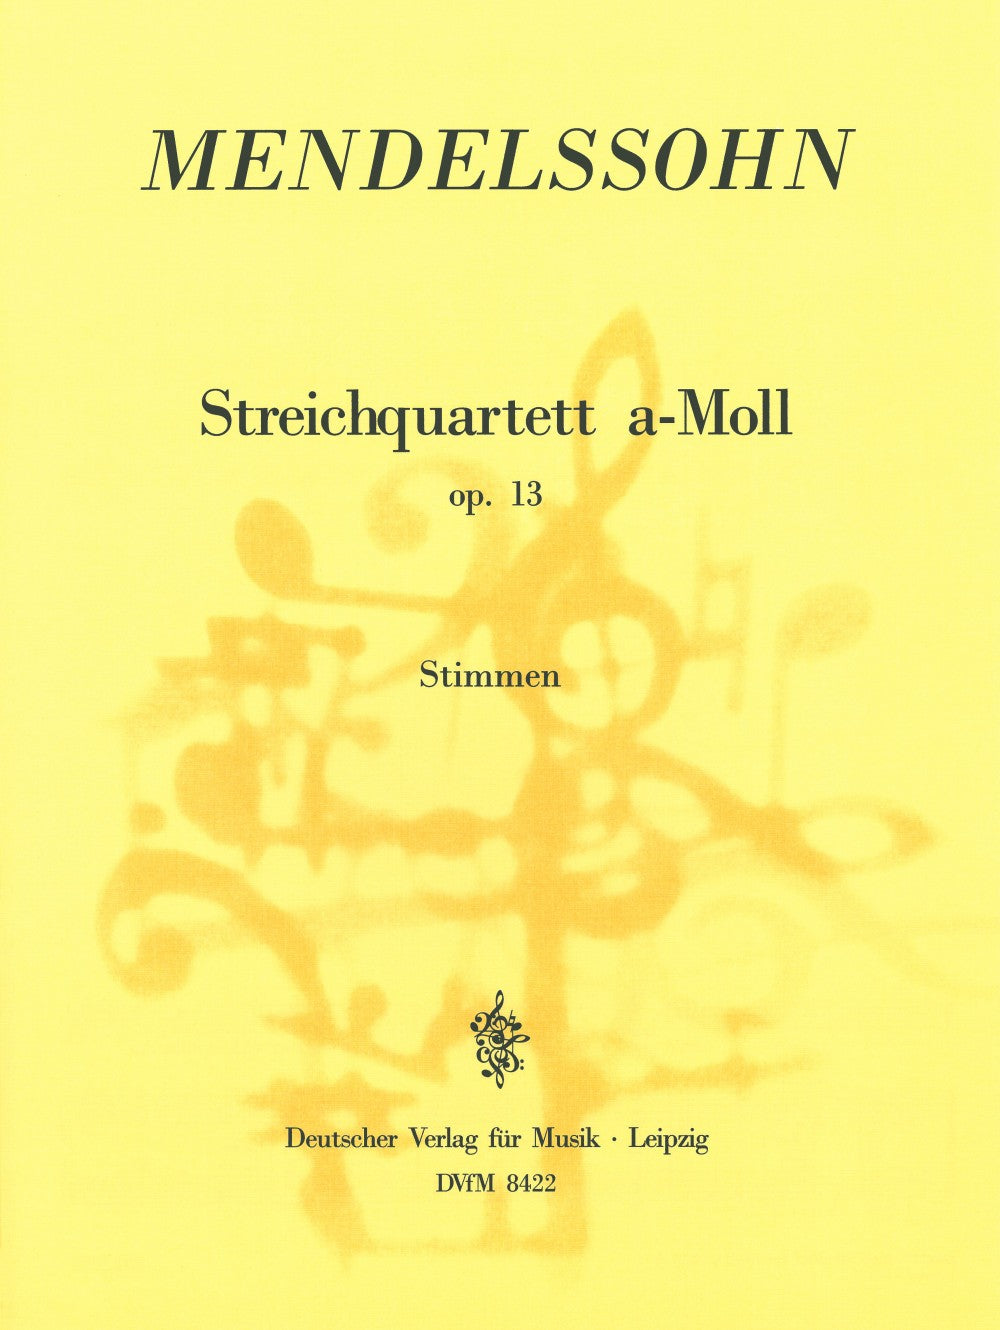 Mendelssohn: String Quartet in A Minor, Op. 13